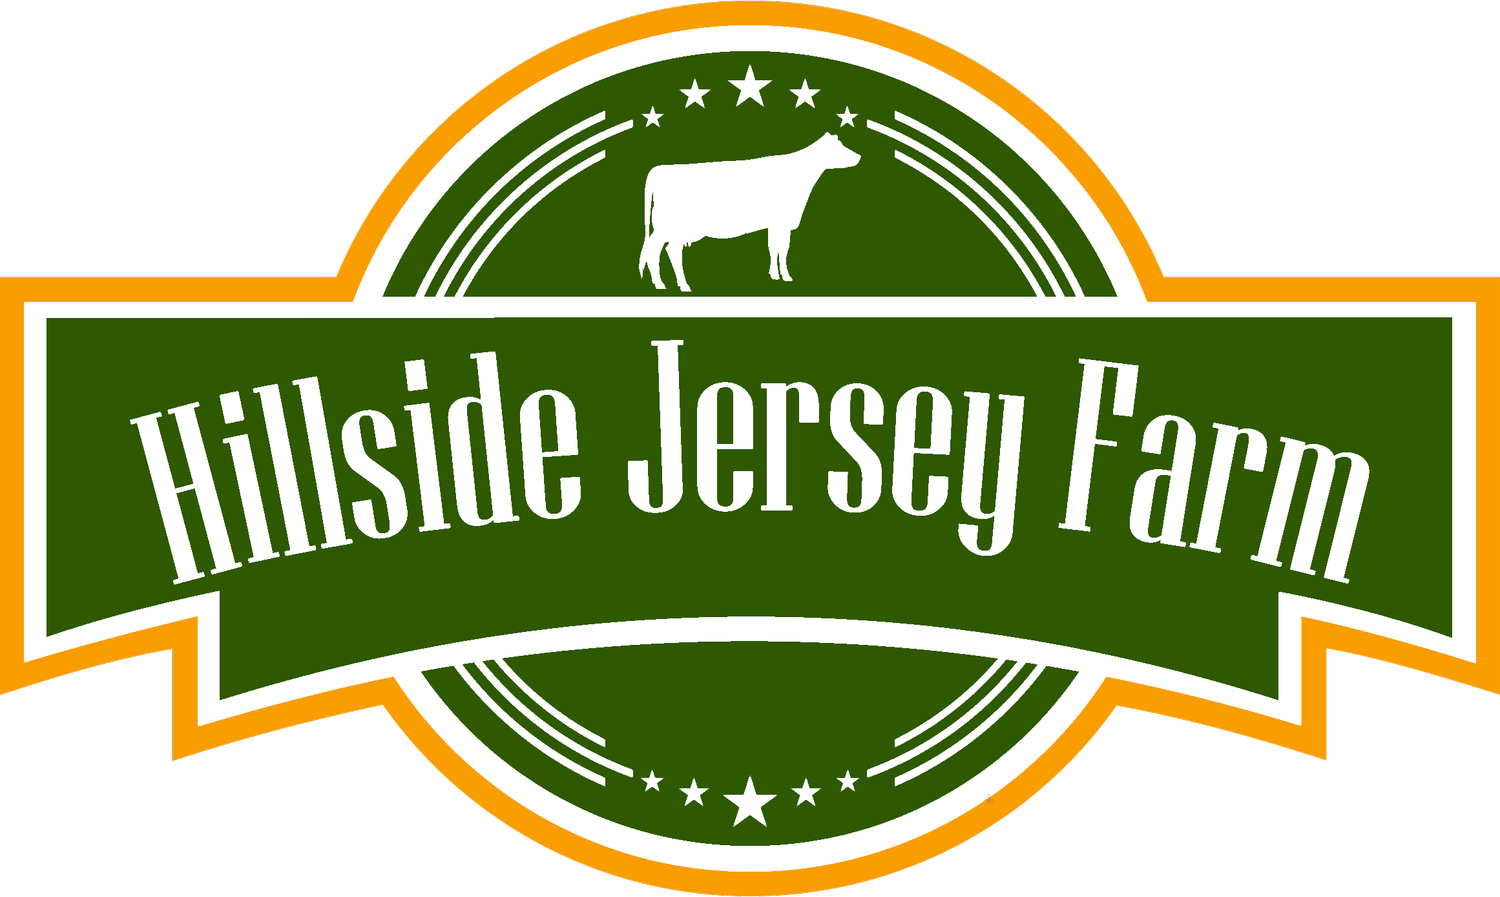 Hillside Jersey Farm 